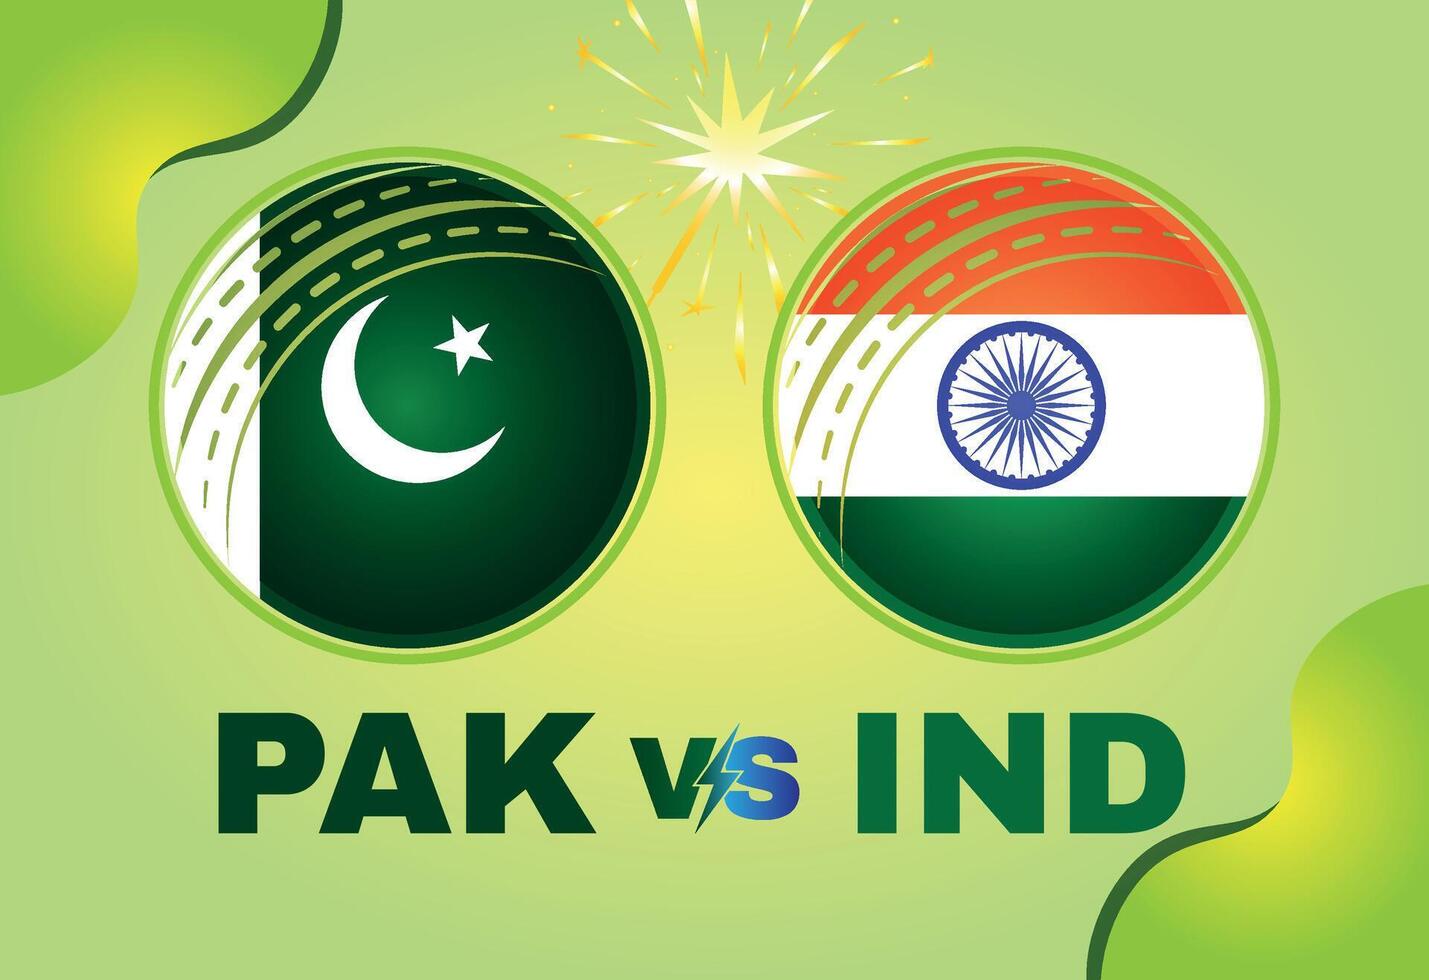 pakistan mot Indien cricket match begrepp med flagga och cricket boll. kreativ illustration av deltagare länder flaggor med lutning bakgrund. pakistan mot Indien cricket match social media posta. vektor